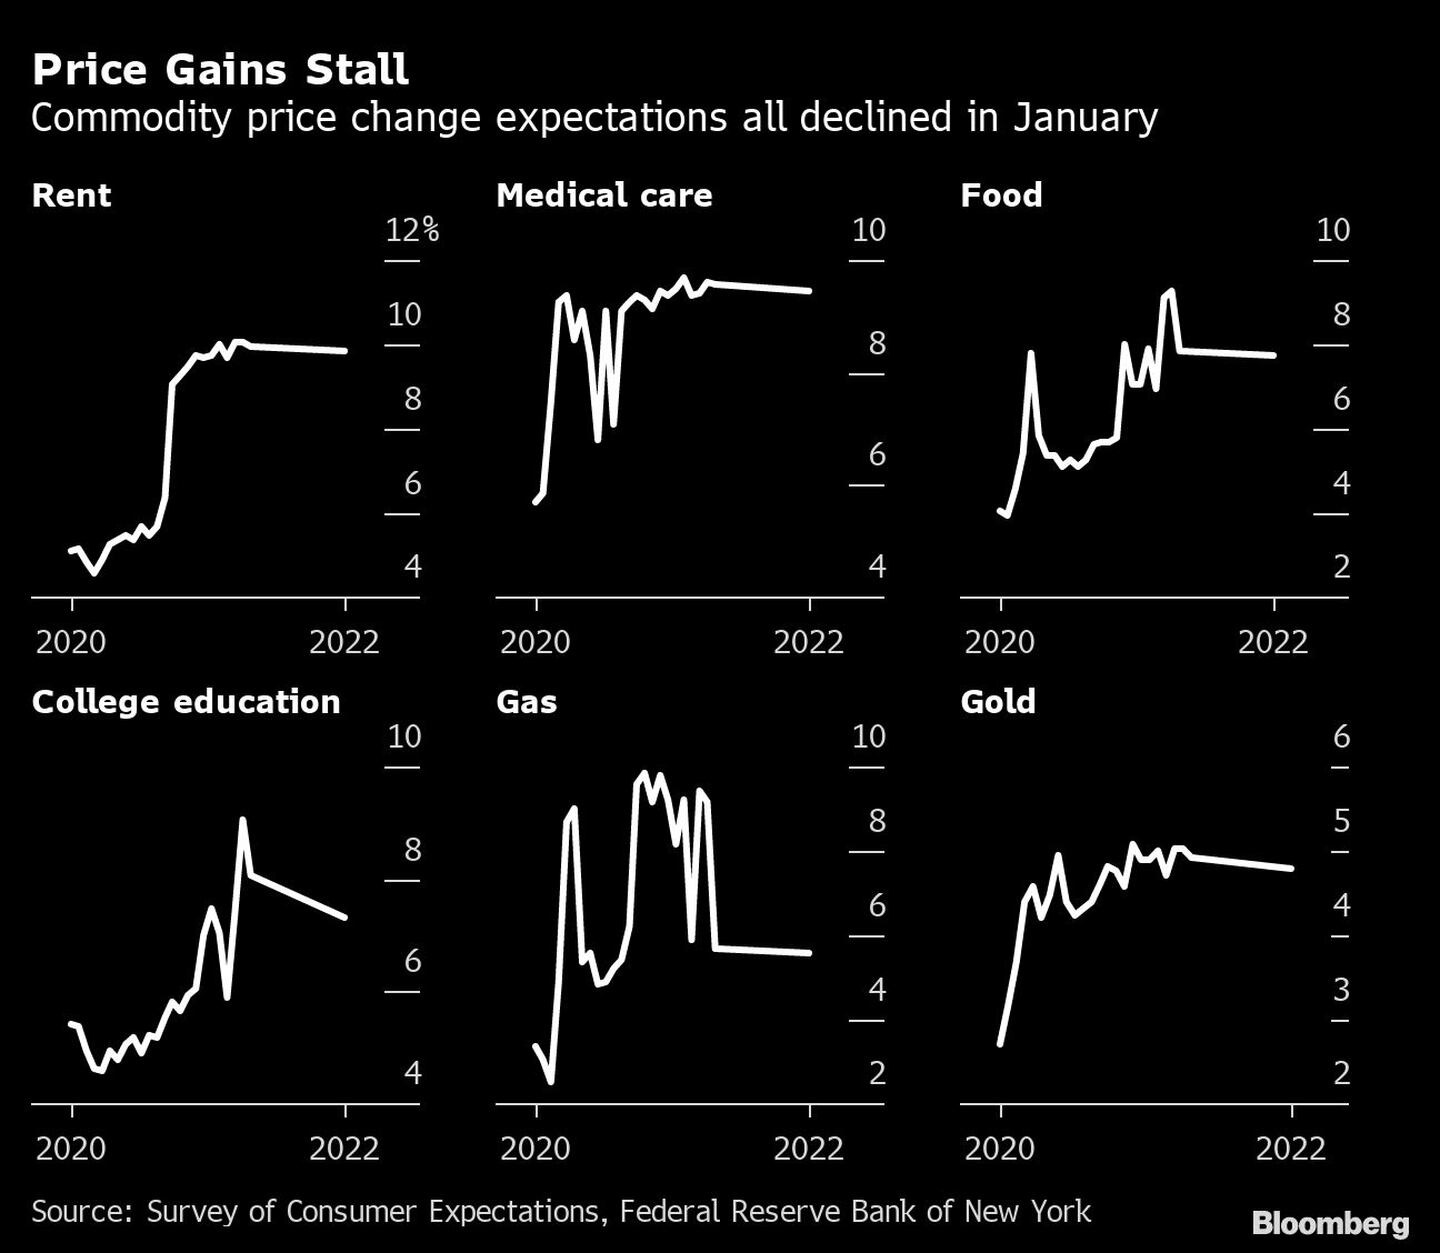 El aumento de los precios se estanca
Las expectativas de variación de los precios de los productos básicos disminuyeron en enero 
Alquiler, Atención médica, Alimentos, Educación universitaria, Gas, Orodfd